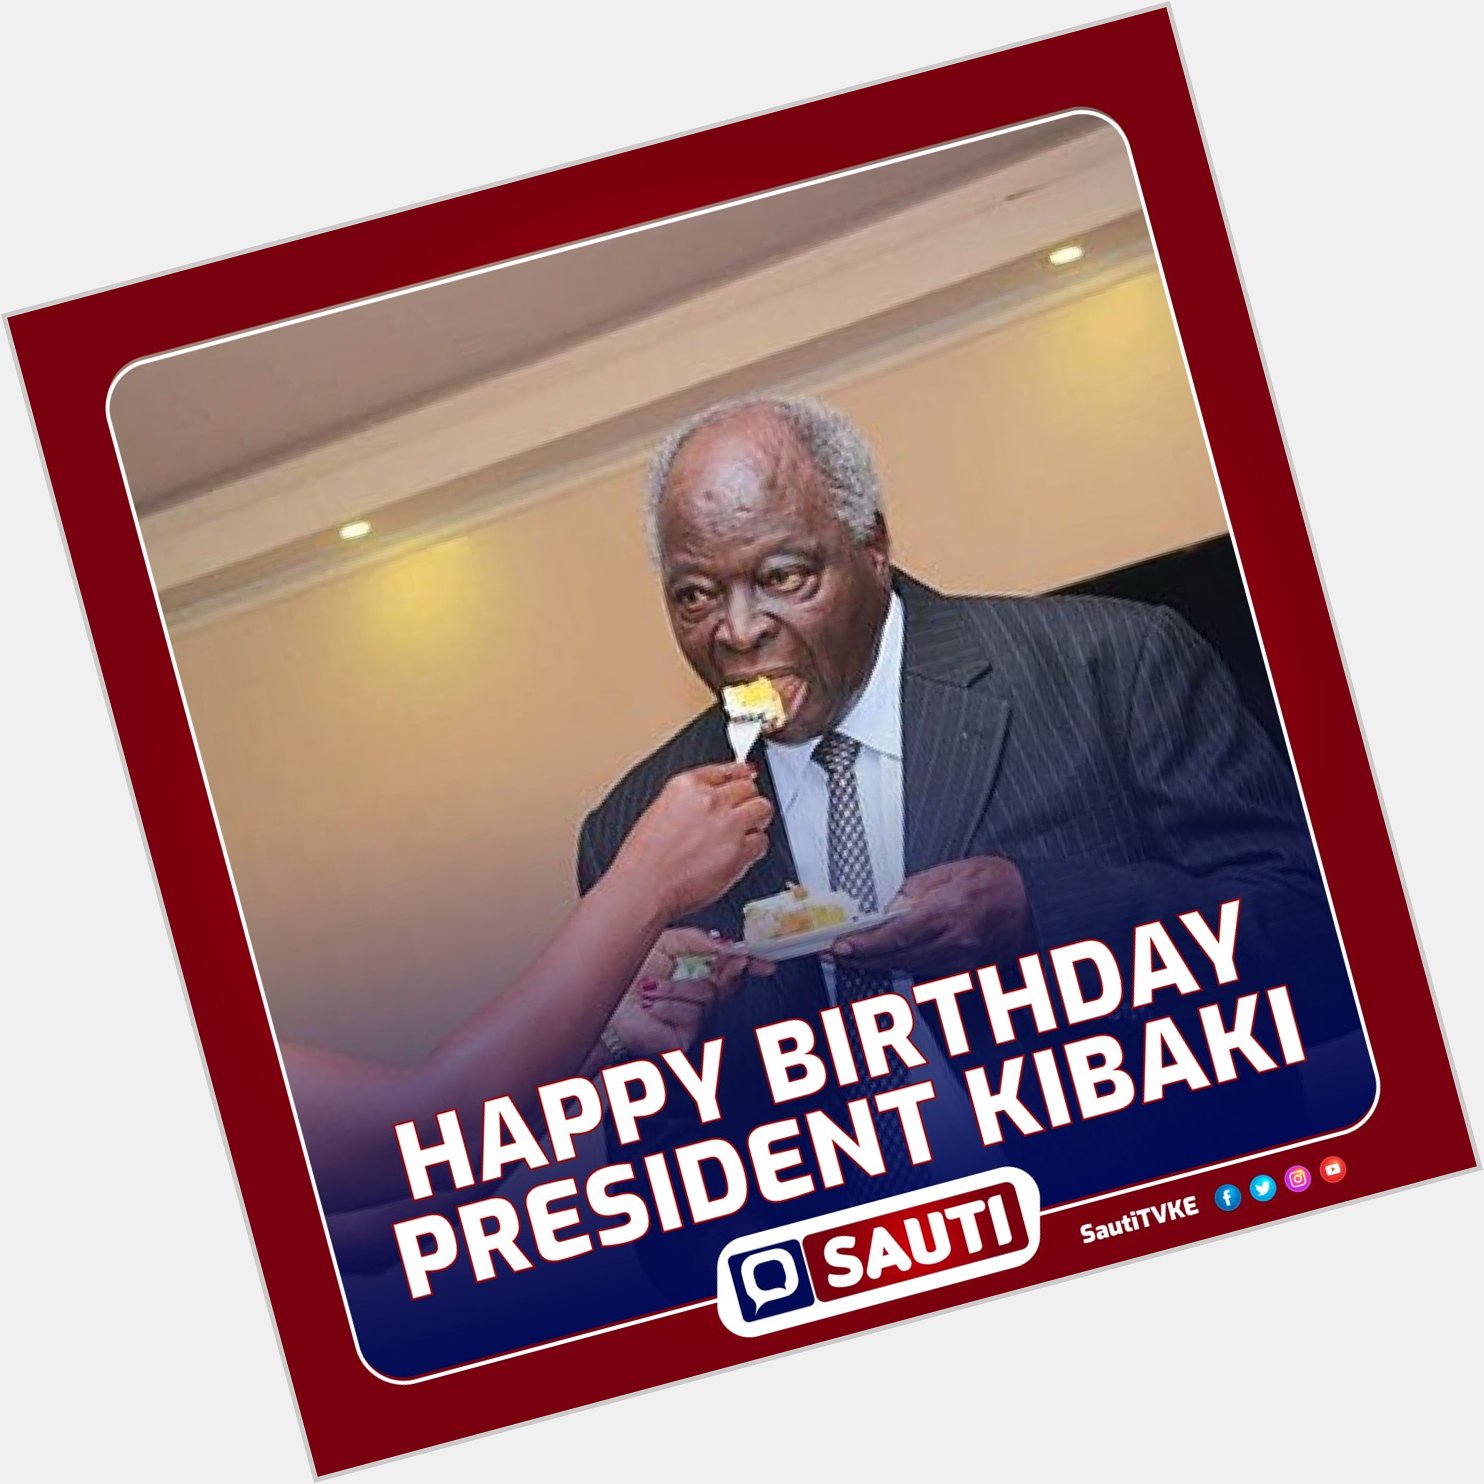 Its H.E. Mwai Kibaki\s 90th birthday.
Happy Birthday to President Mwai Kibaki! 